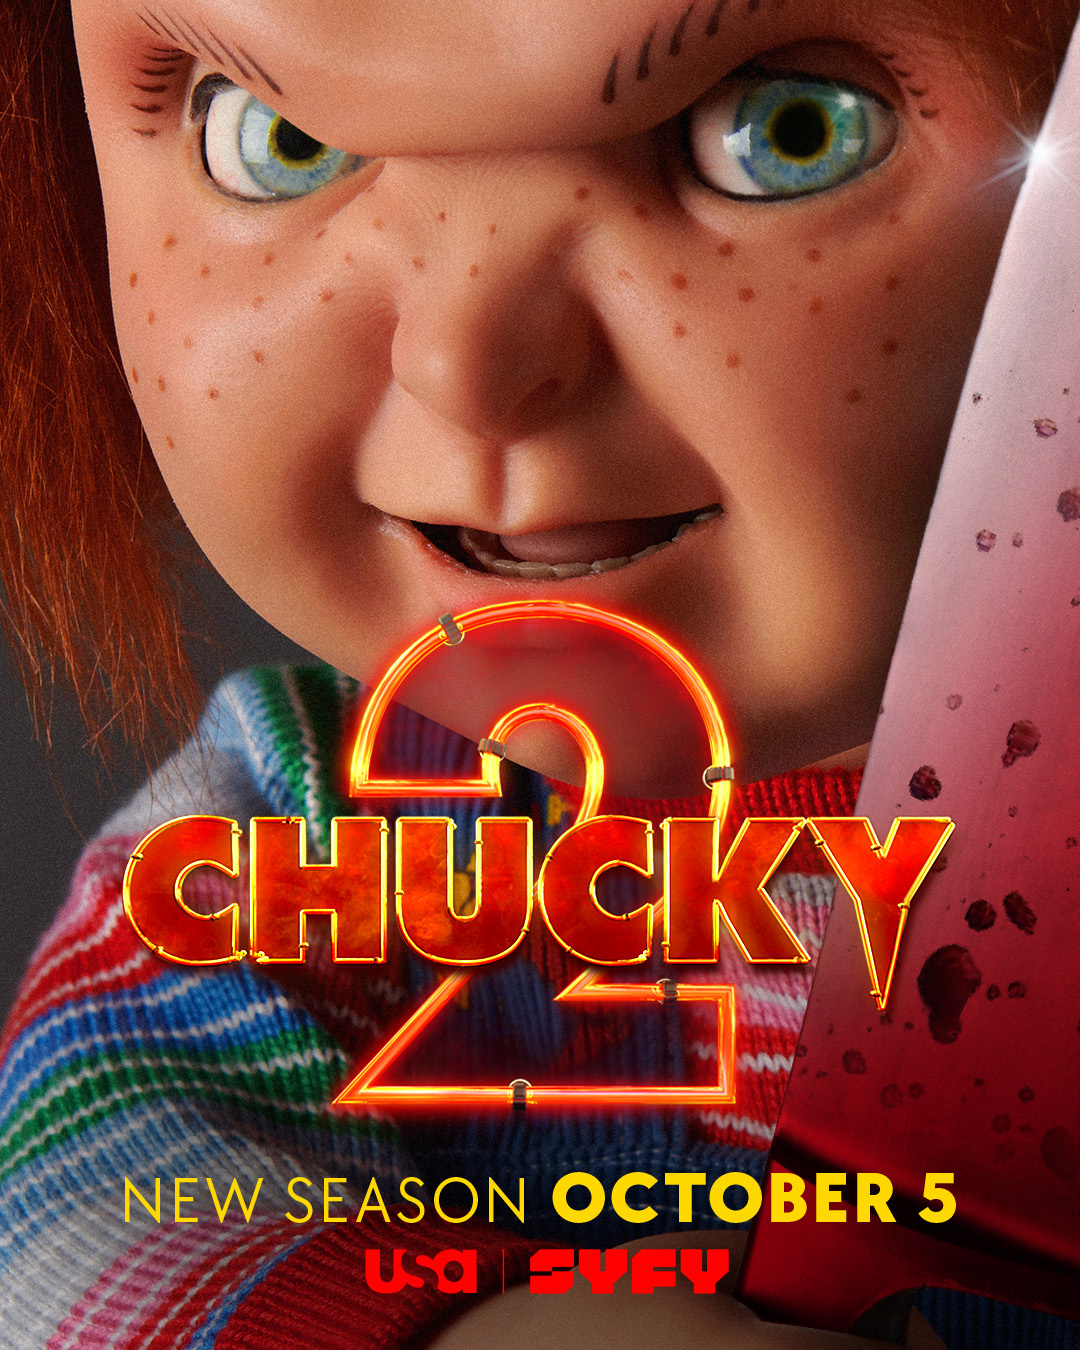 Chucky season 2 premieres October 5